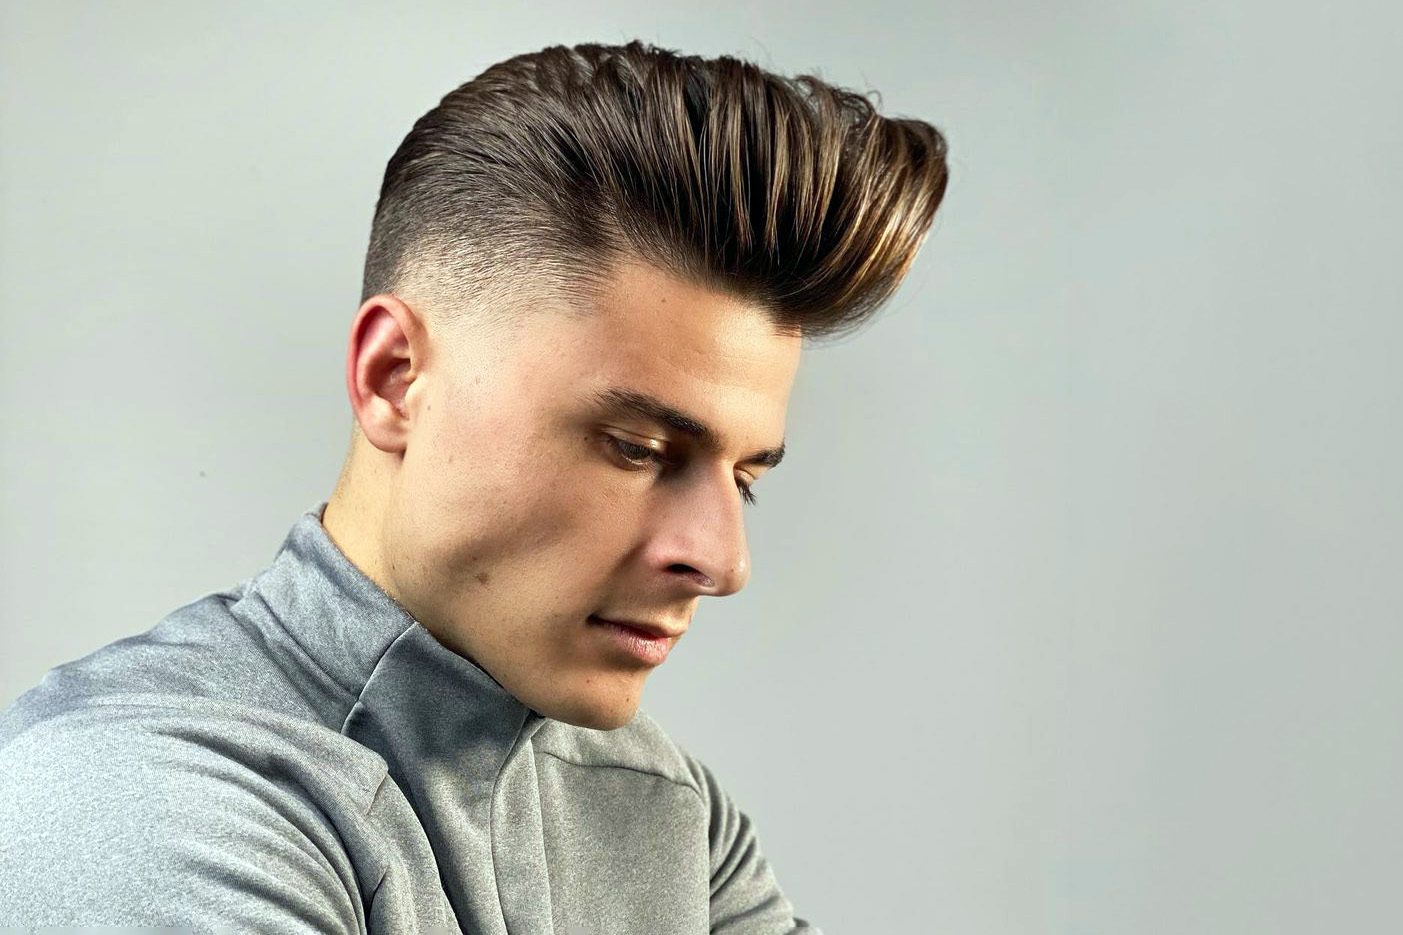 Haircut Styles for Men - Detroit Barber Co.